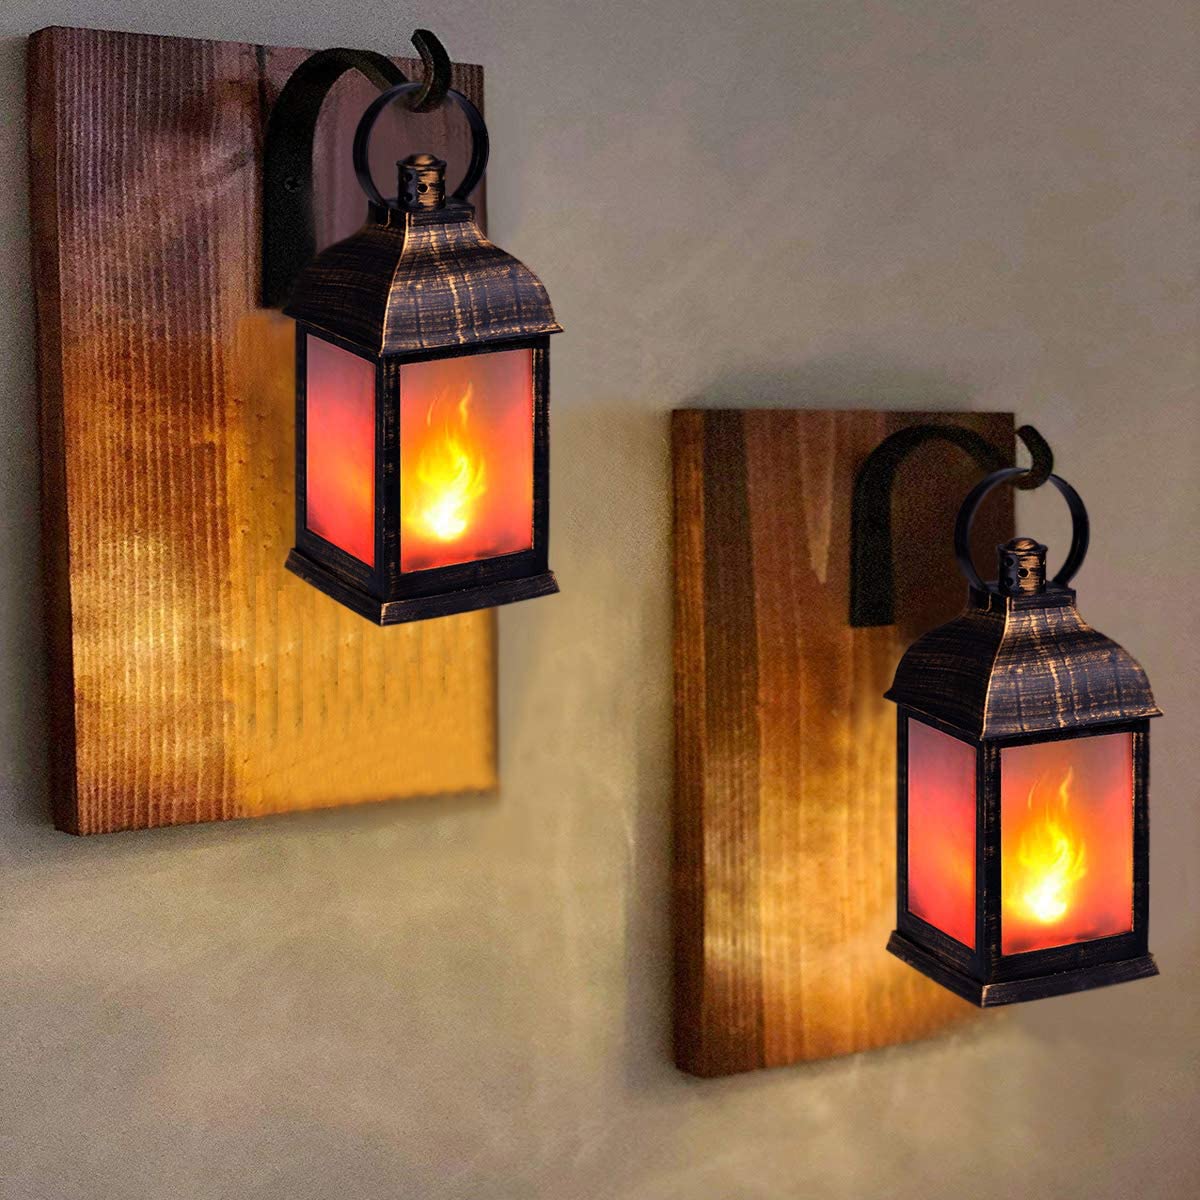 https://flameproduct.com/wp-content/uploads/2022/12/ZKEE-Vintage-Style-LED-Flame-Lantern-6.jpg